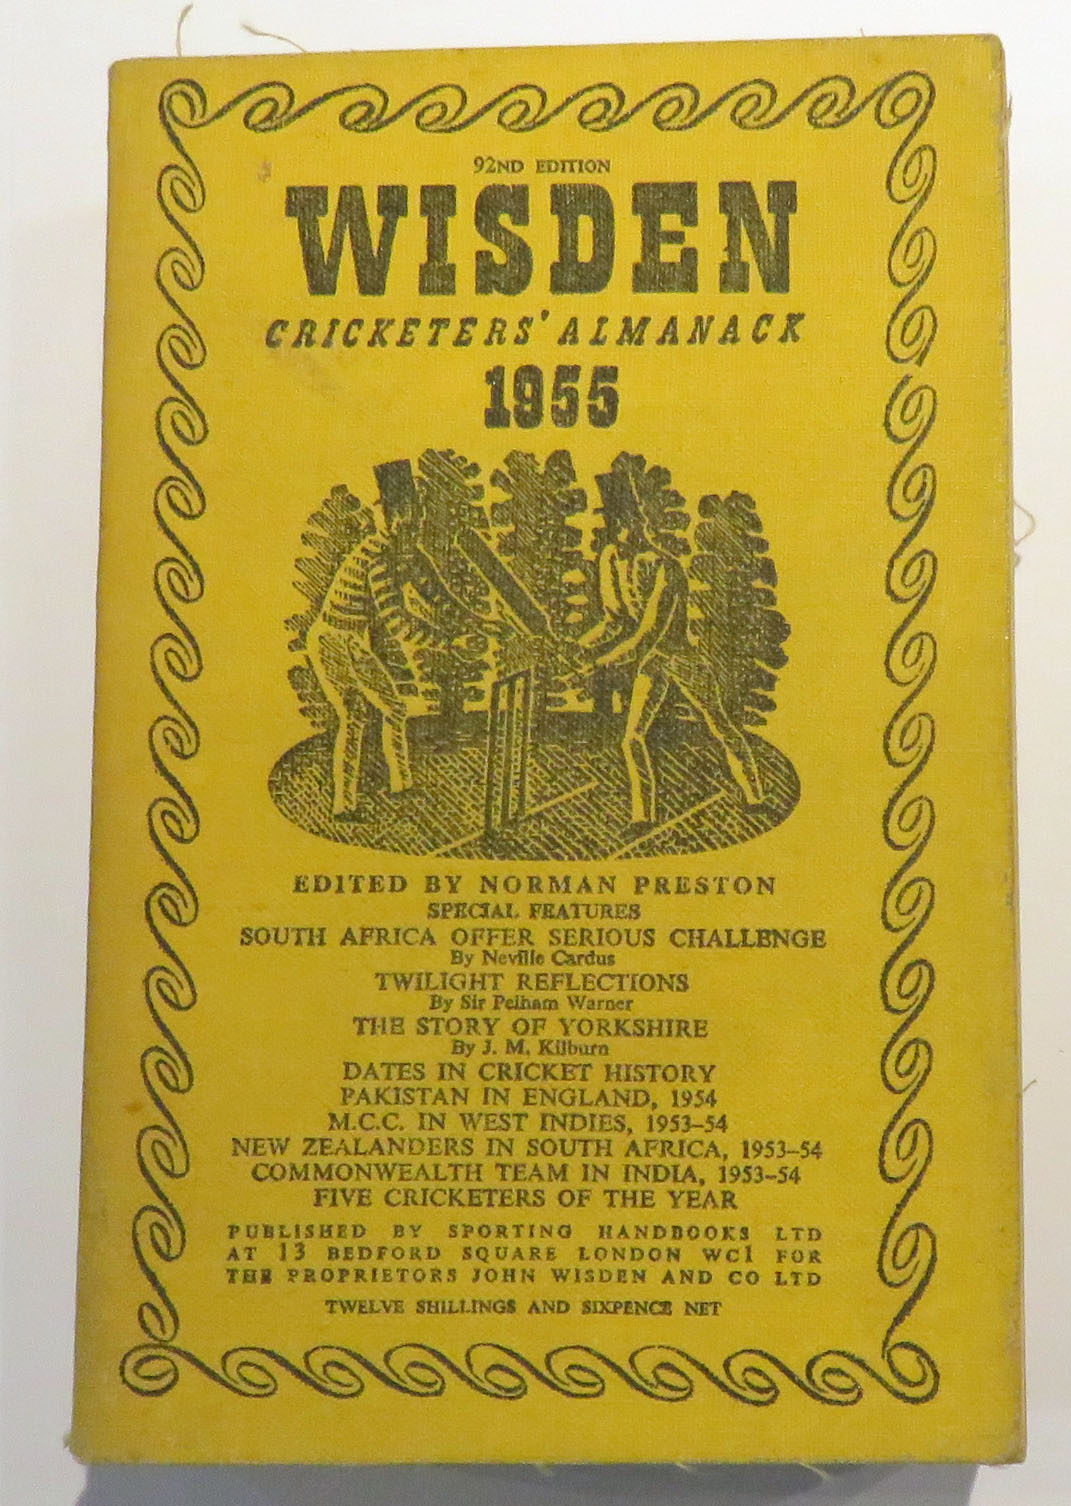 Wisden Cricketers' Almanack 1955